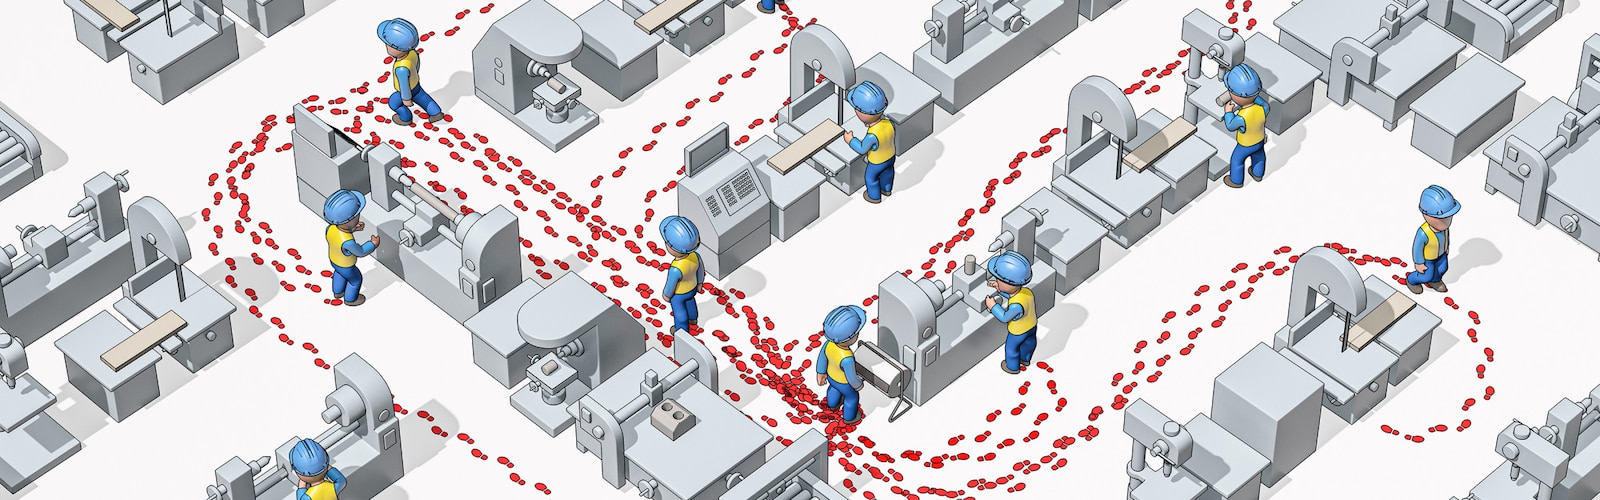 Ilustrovaný obrázek pracovníků v průmyslu v ochranných přilbách při pohledu shora v průmyslovém prostředí s viditelnými stopami pro znázornění jejich pohybu.